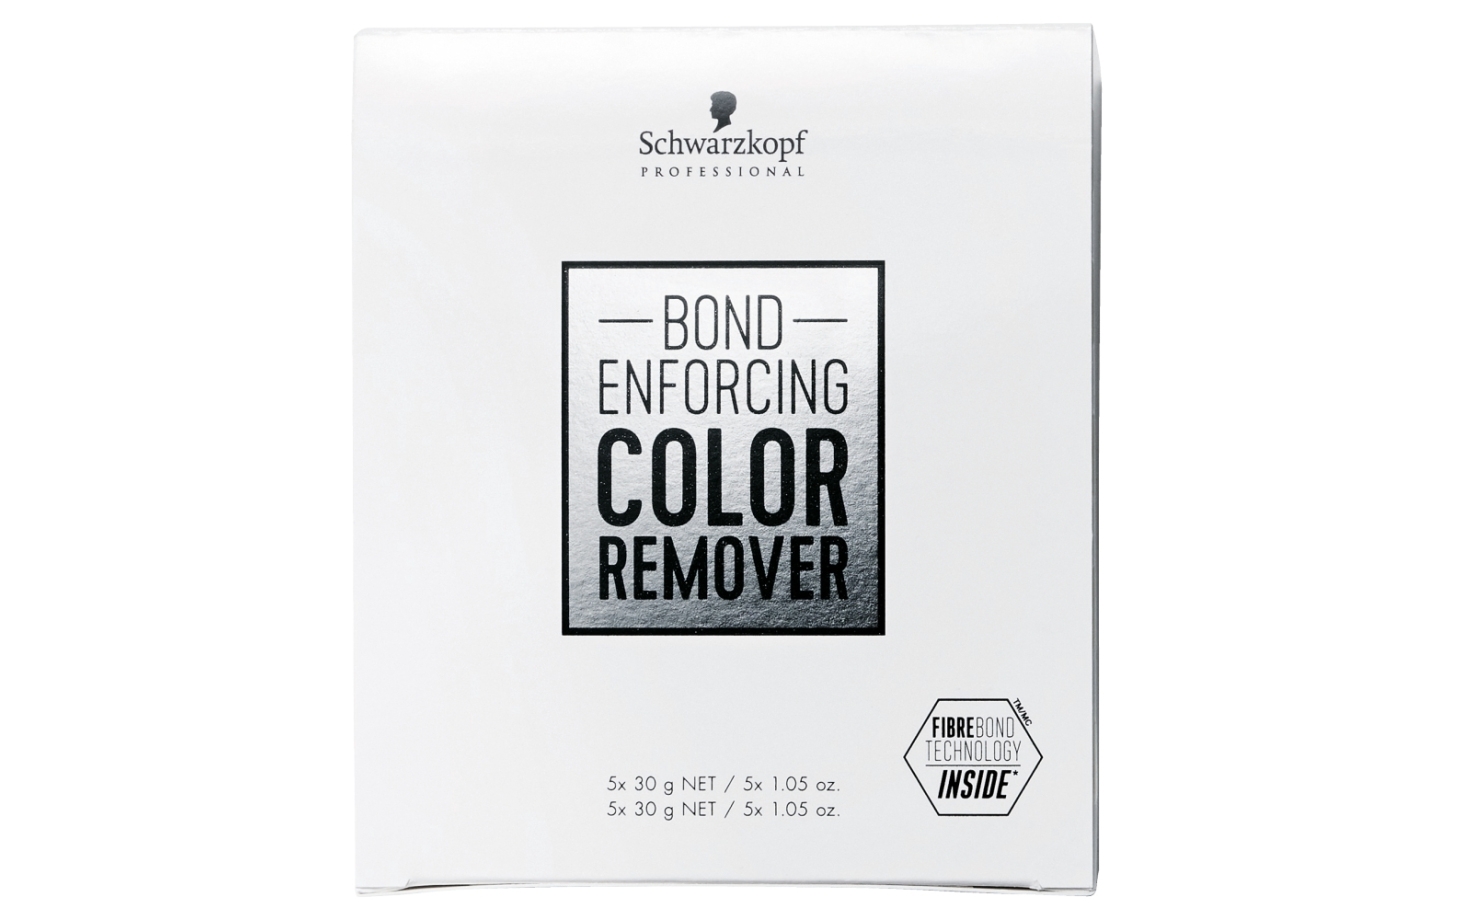 10. Schwarzkopf Professional Bond Enforcing Color Remover - wide 3